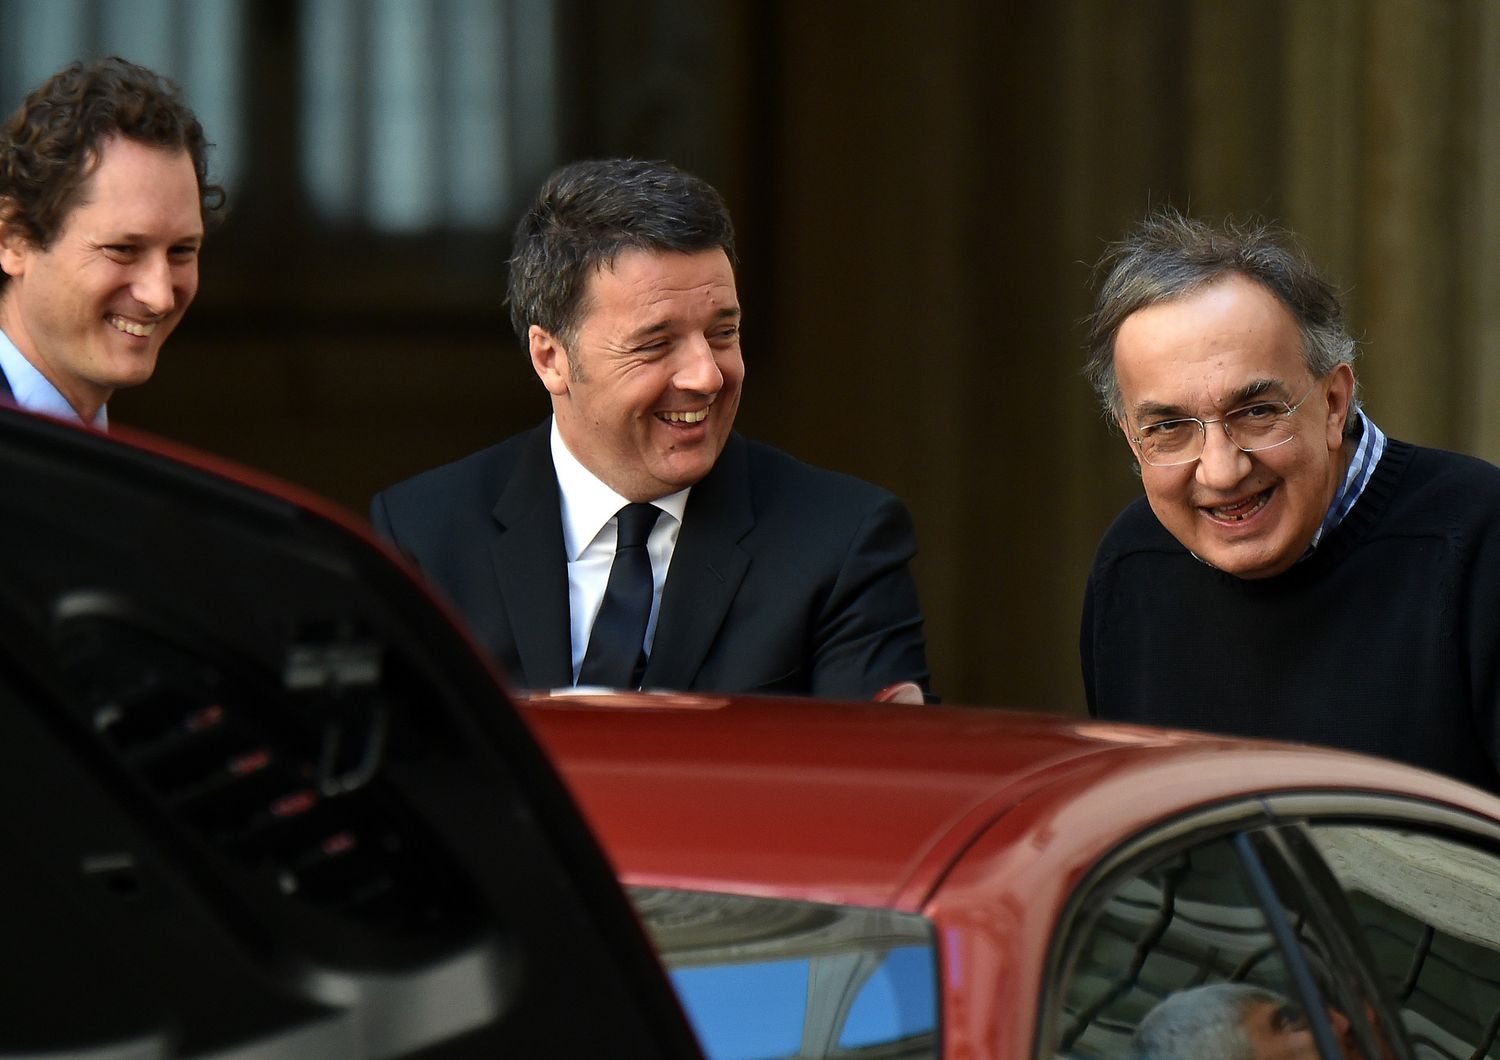 La presentazione della nuova Giulia, automobile dell'Alfa Romeo, nella foto Matteo Renzi con Sergio Marchionne e John Elkann